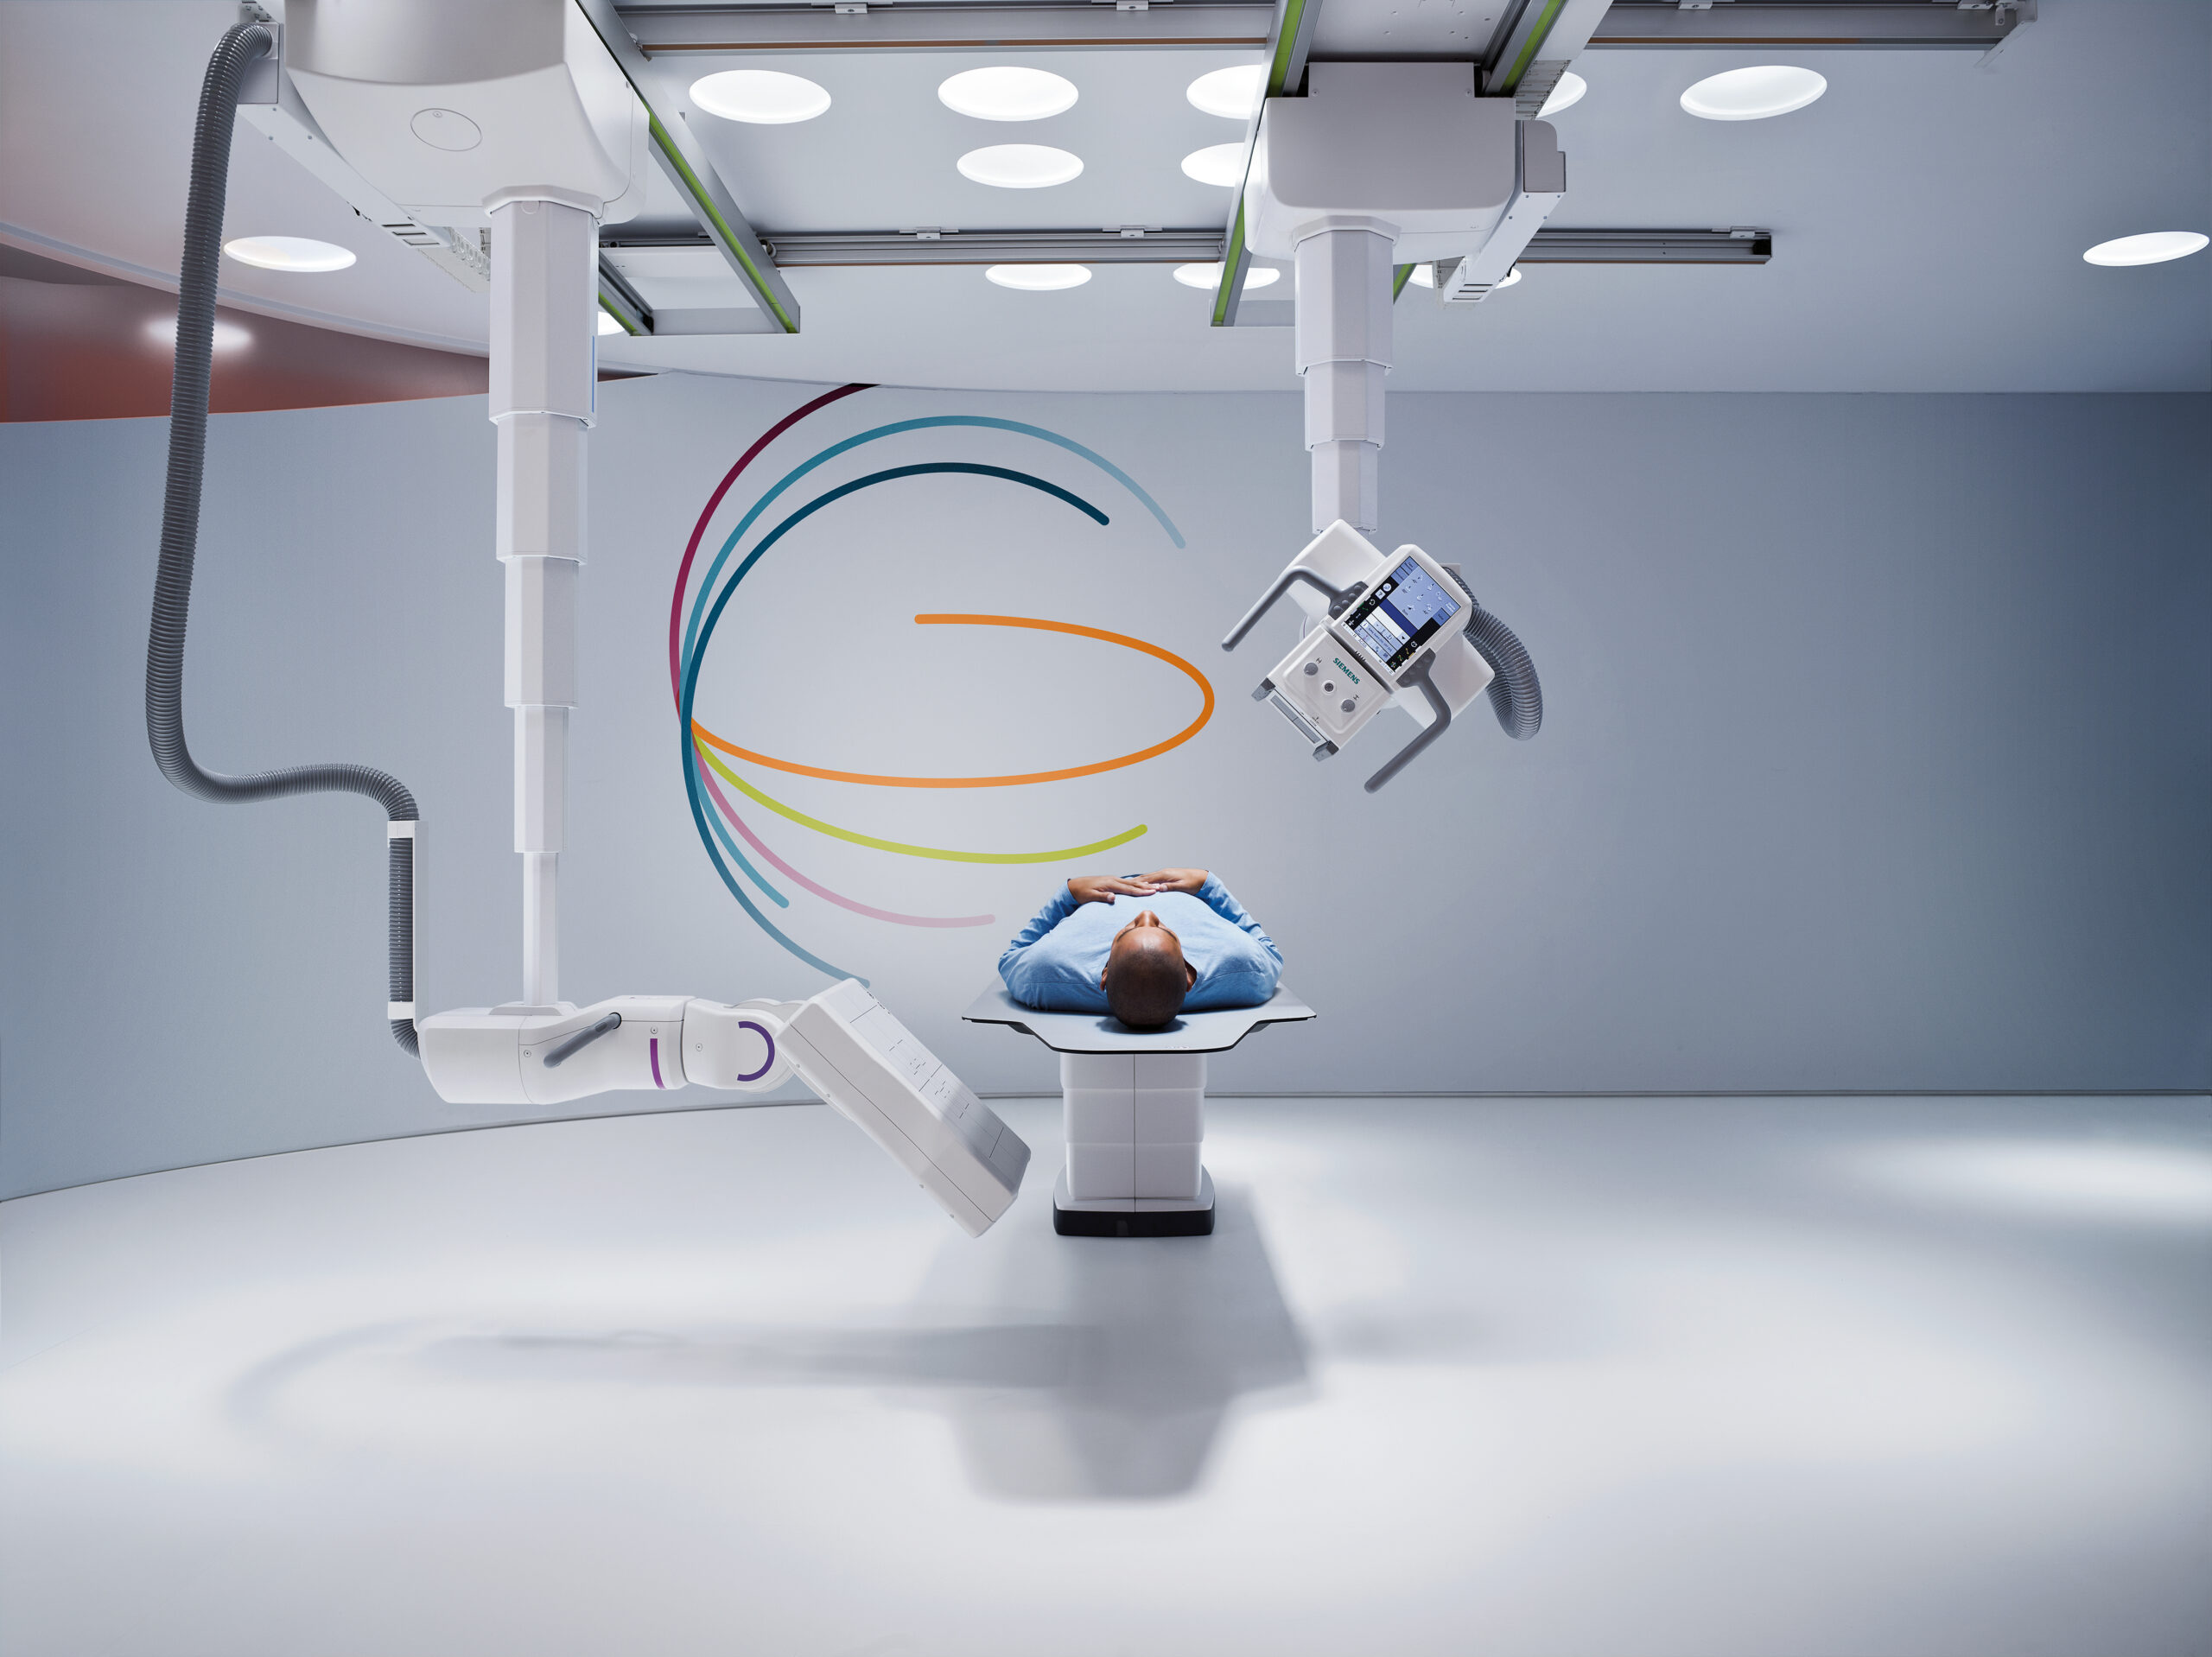 Roboter-basiertes Röntgen